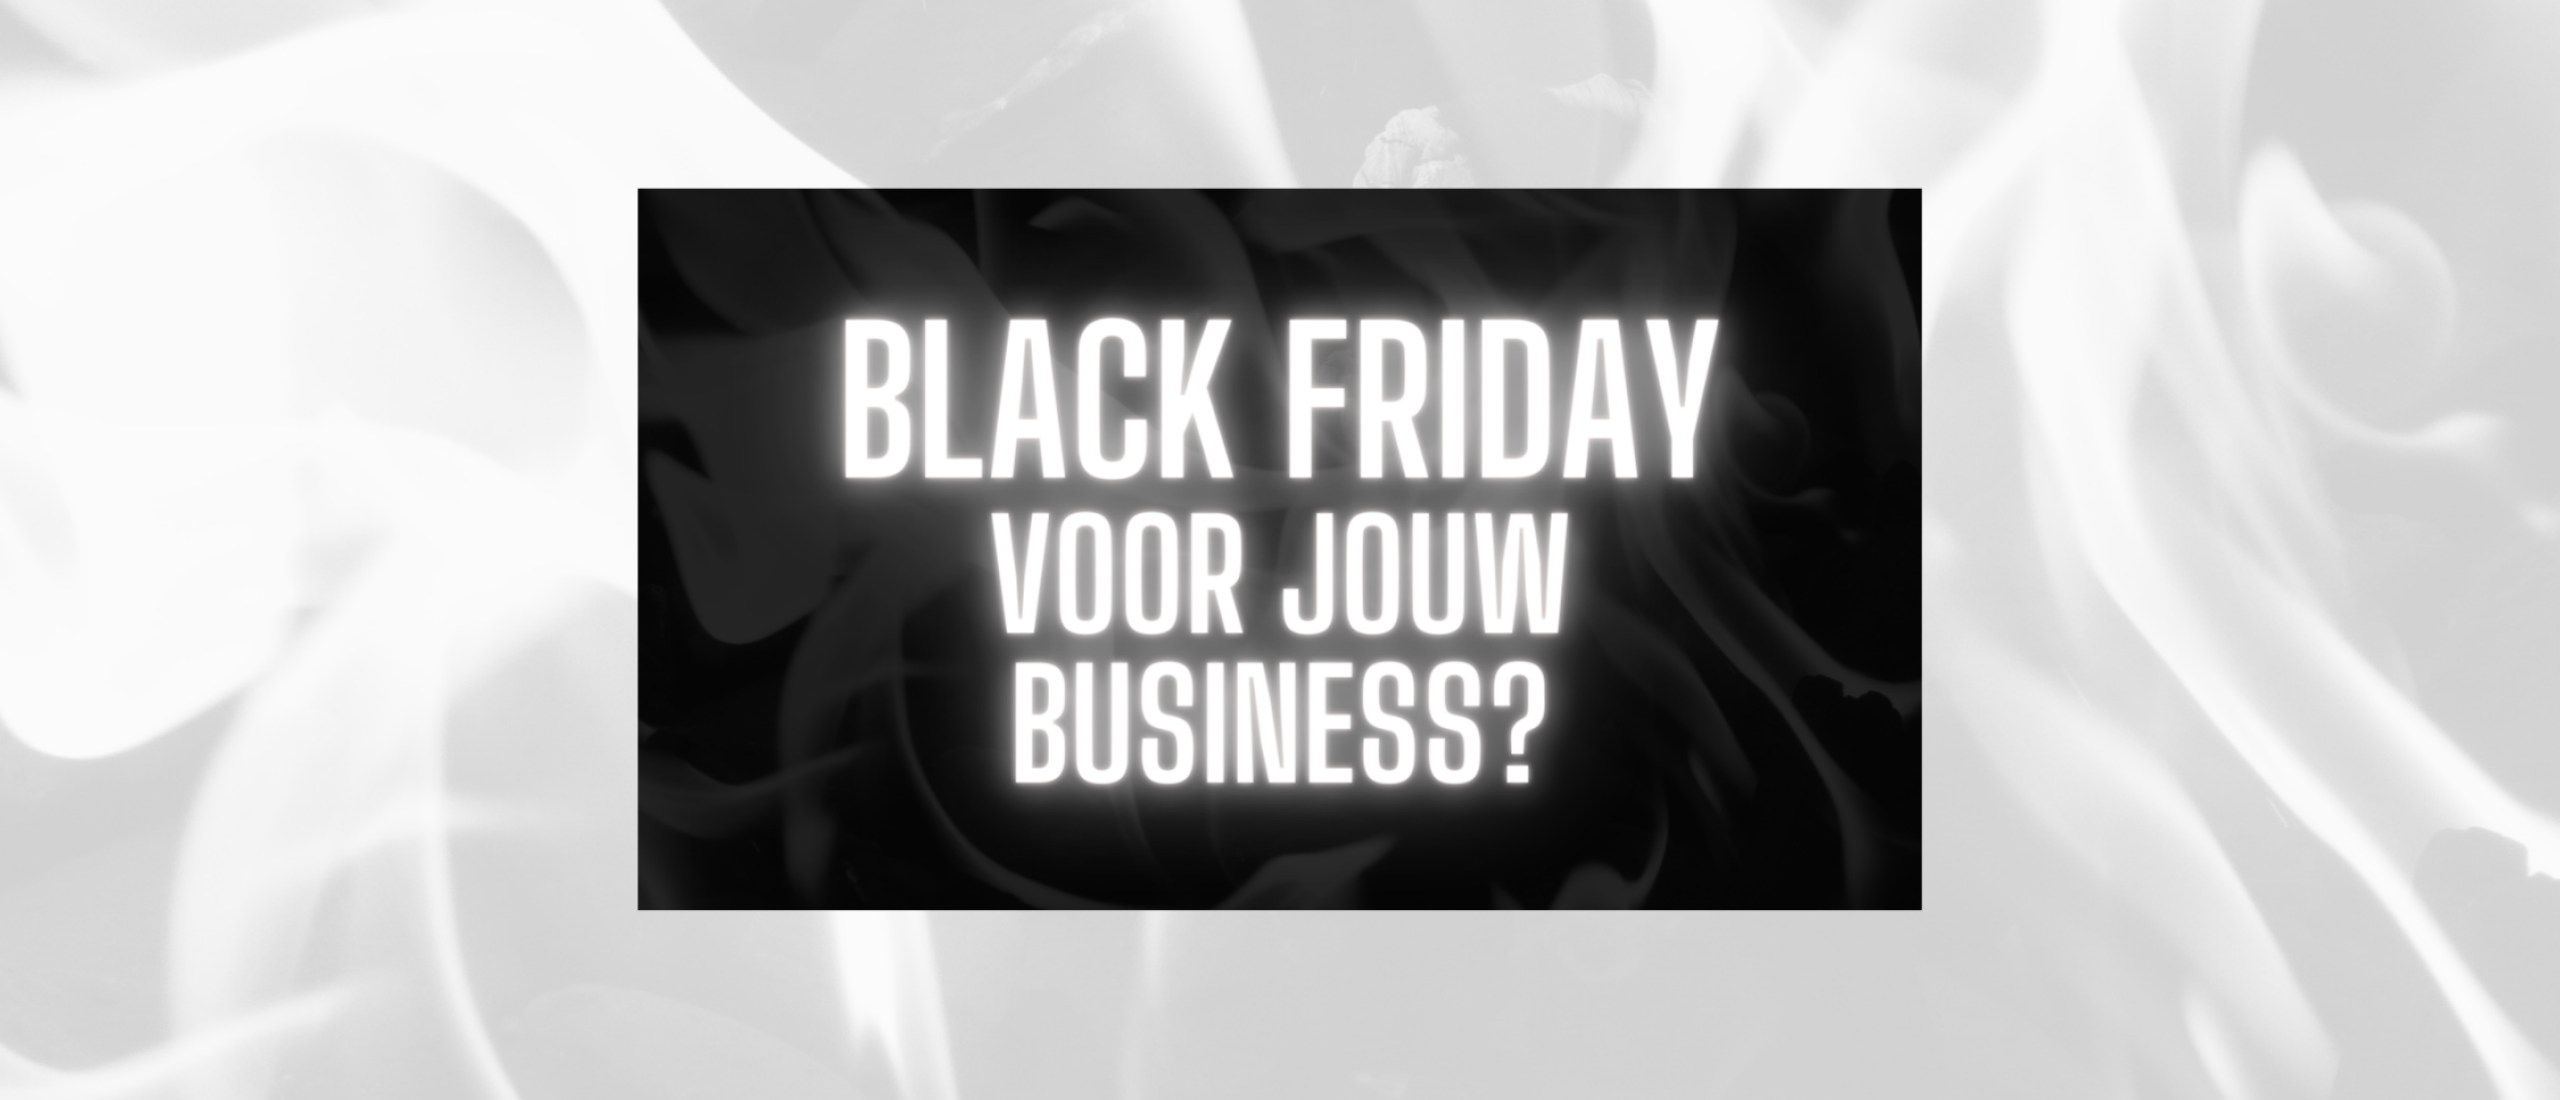 Black Friday voor jouw business